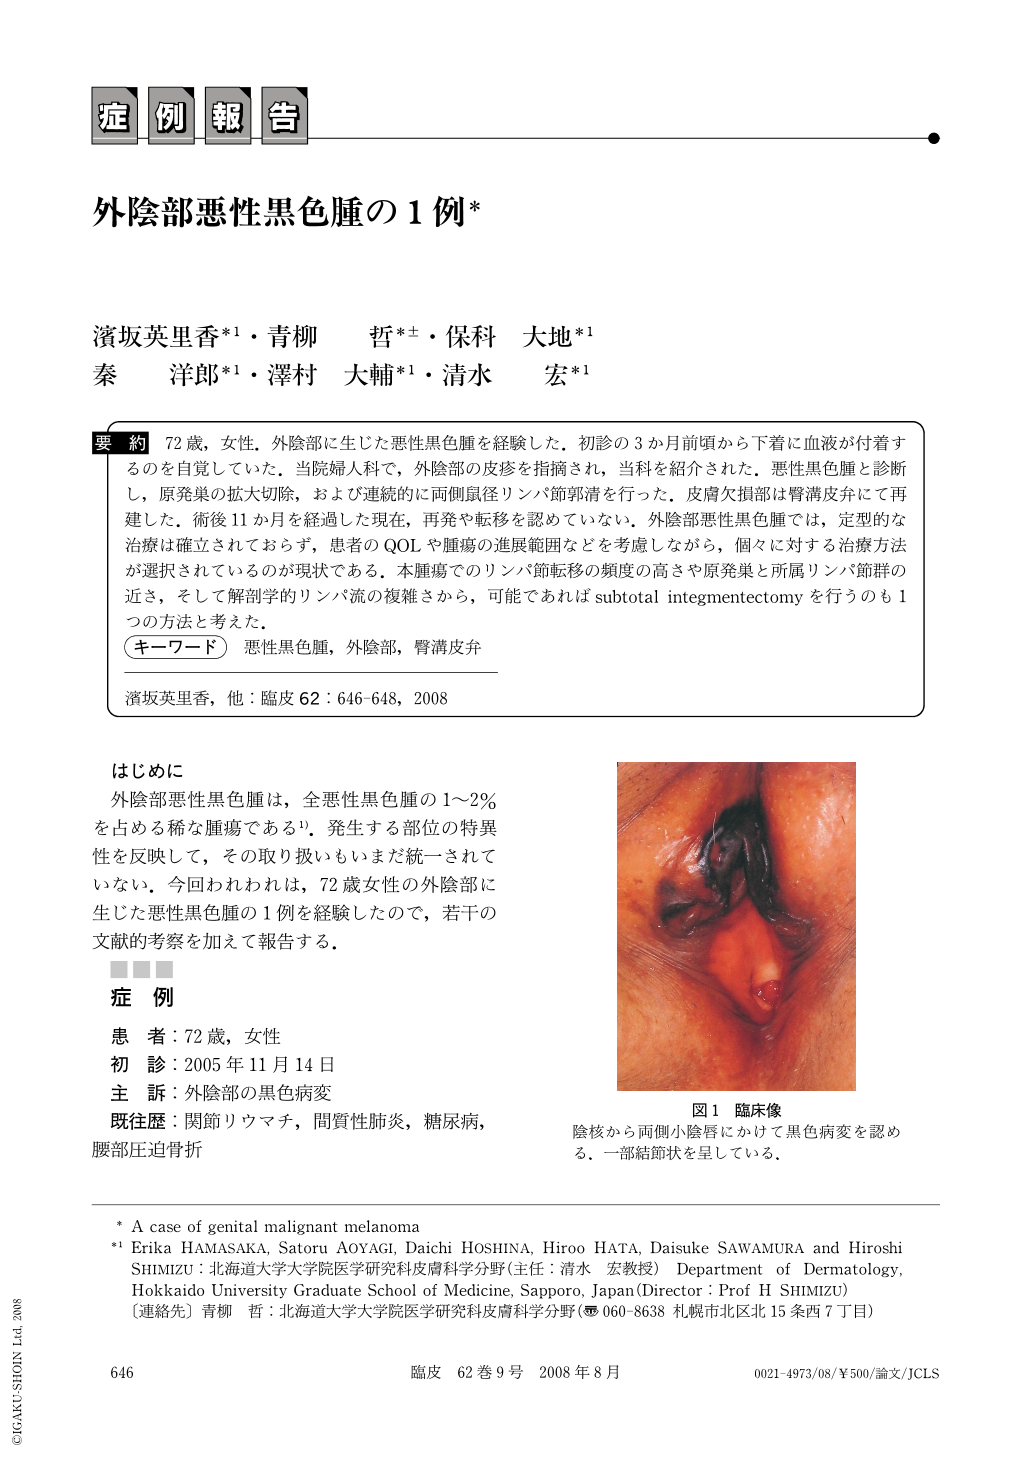 外陰部悪性黒色腫の1例 臨床皮膚科 62巻9号 医書 Jp